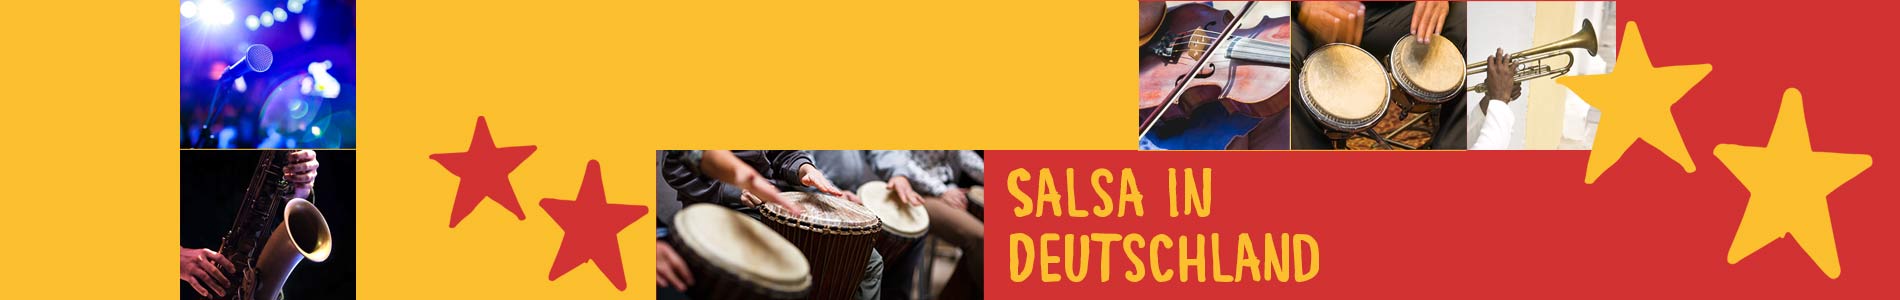 Salsa in Burghaun – Salsa lernen und tanzen, Tanzkurse, Partys, Veranstaltungen